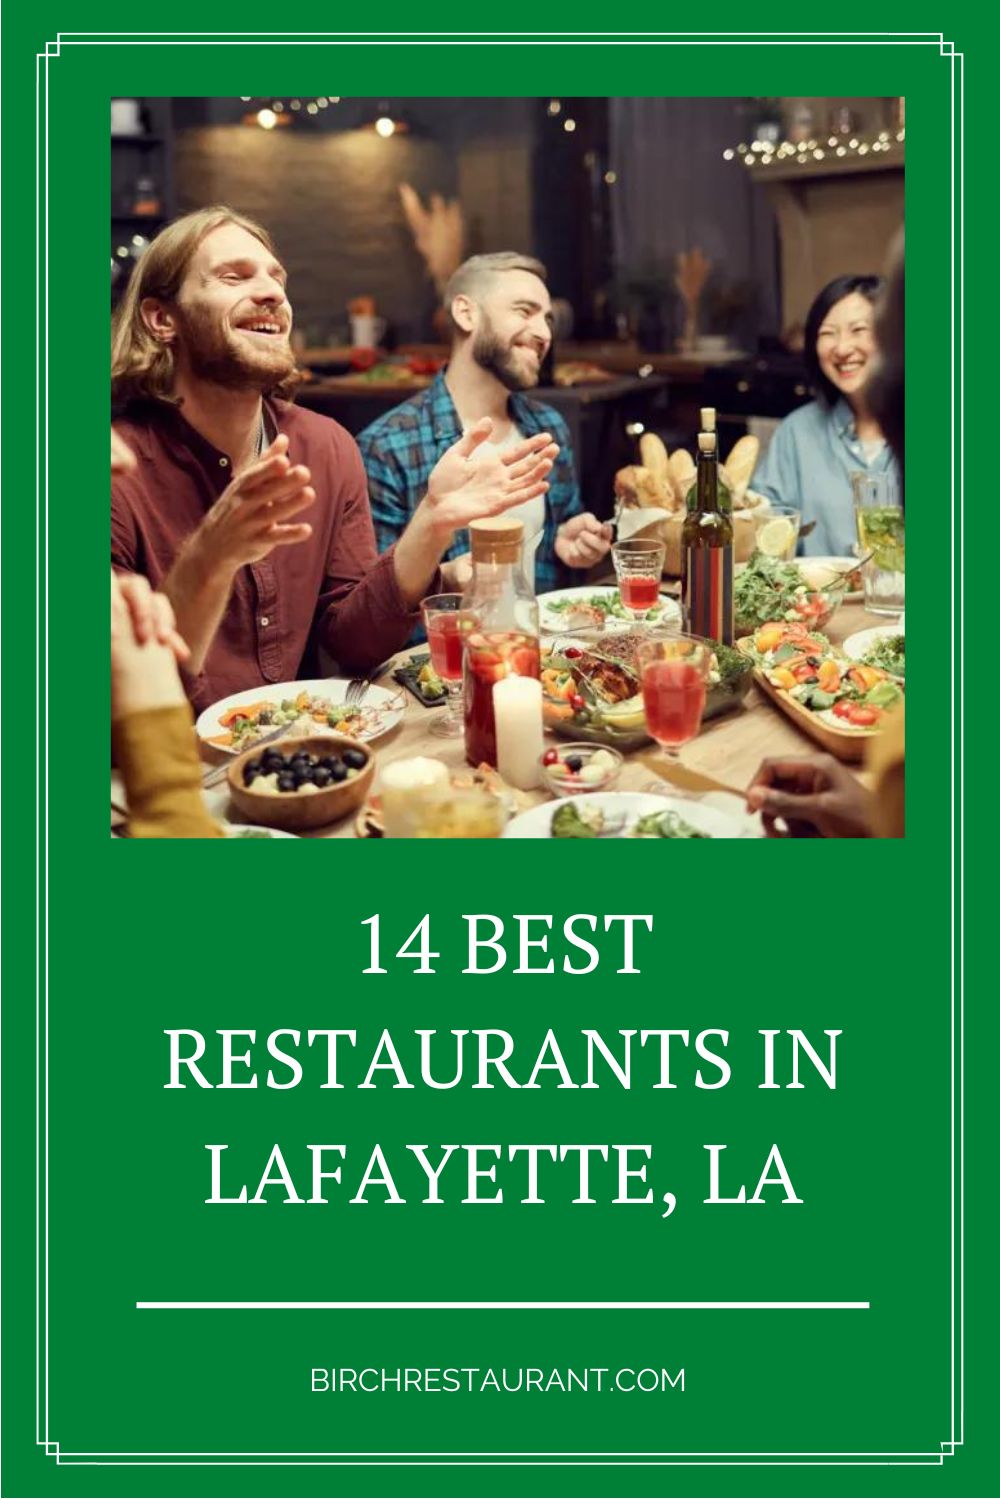 Best Restaurants in Lafayette